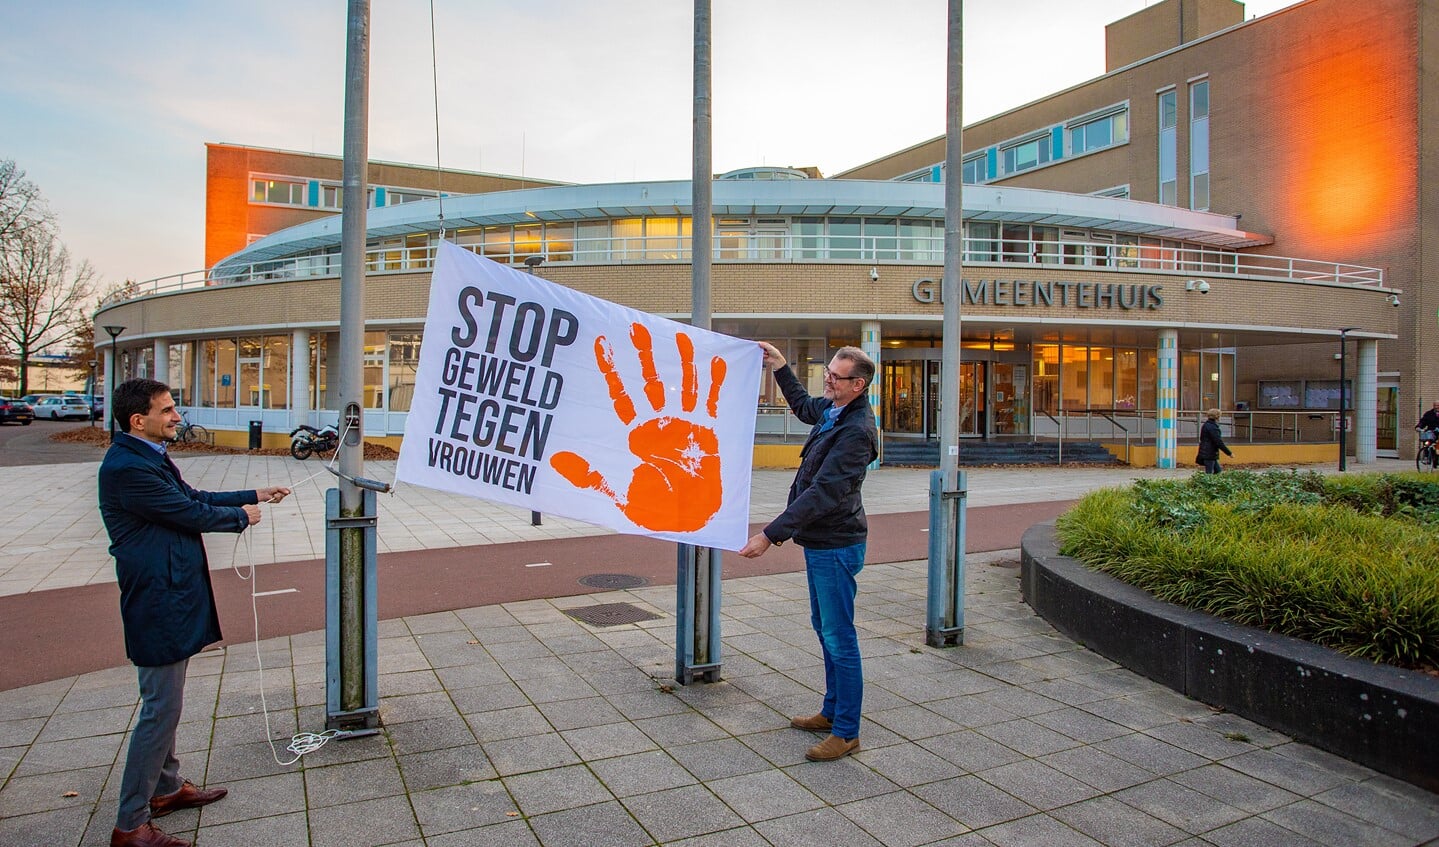 Wethouder Maarten Hoelscher (l) met de vlag en het oranje uitgelichte gemeentehuis op de achtergrond.